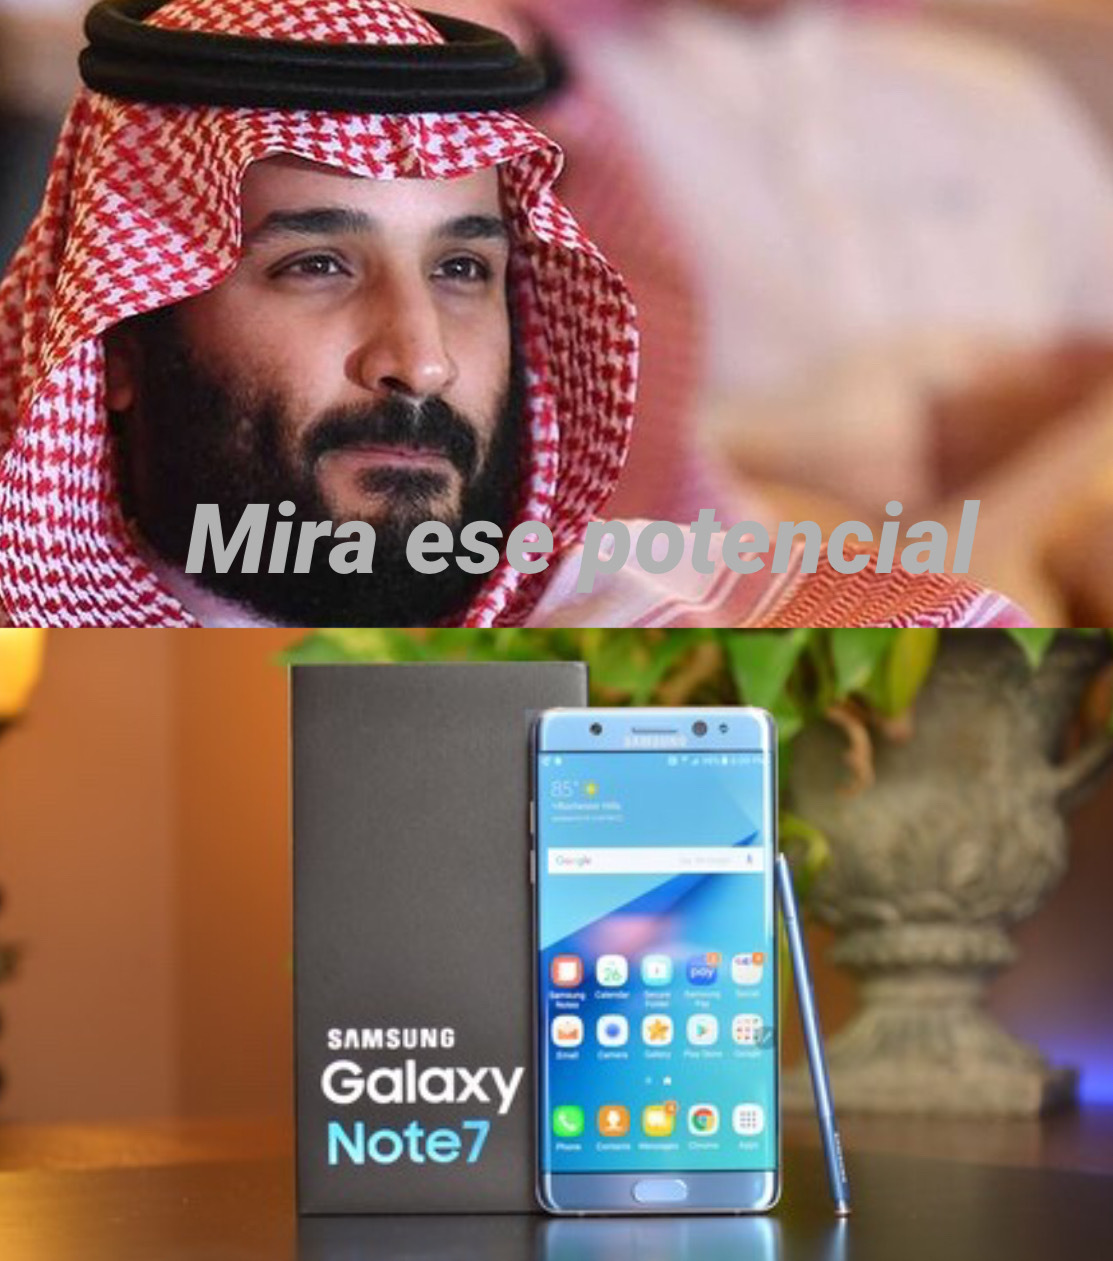 Arabia Saudita ganará el siguiente mundial - meme